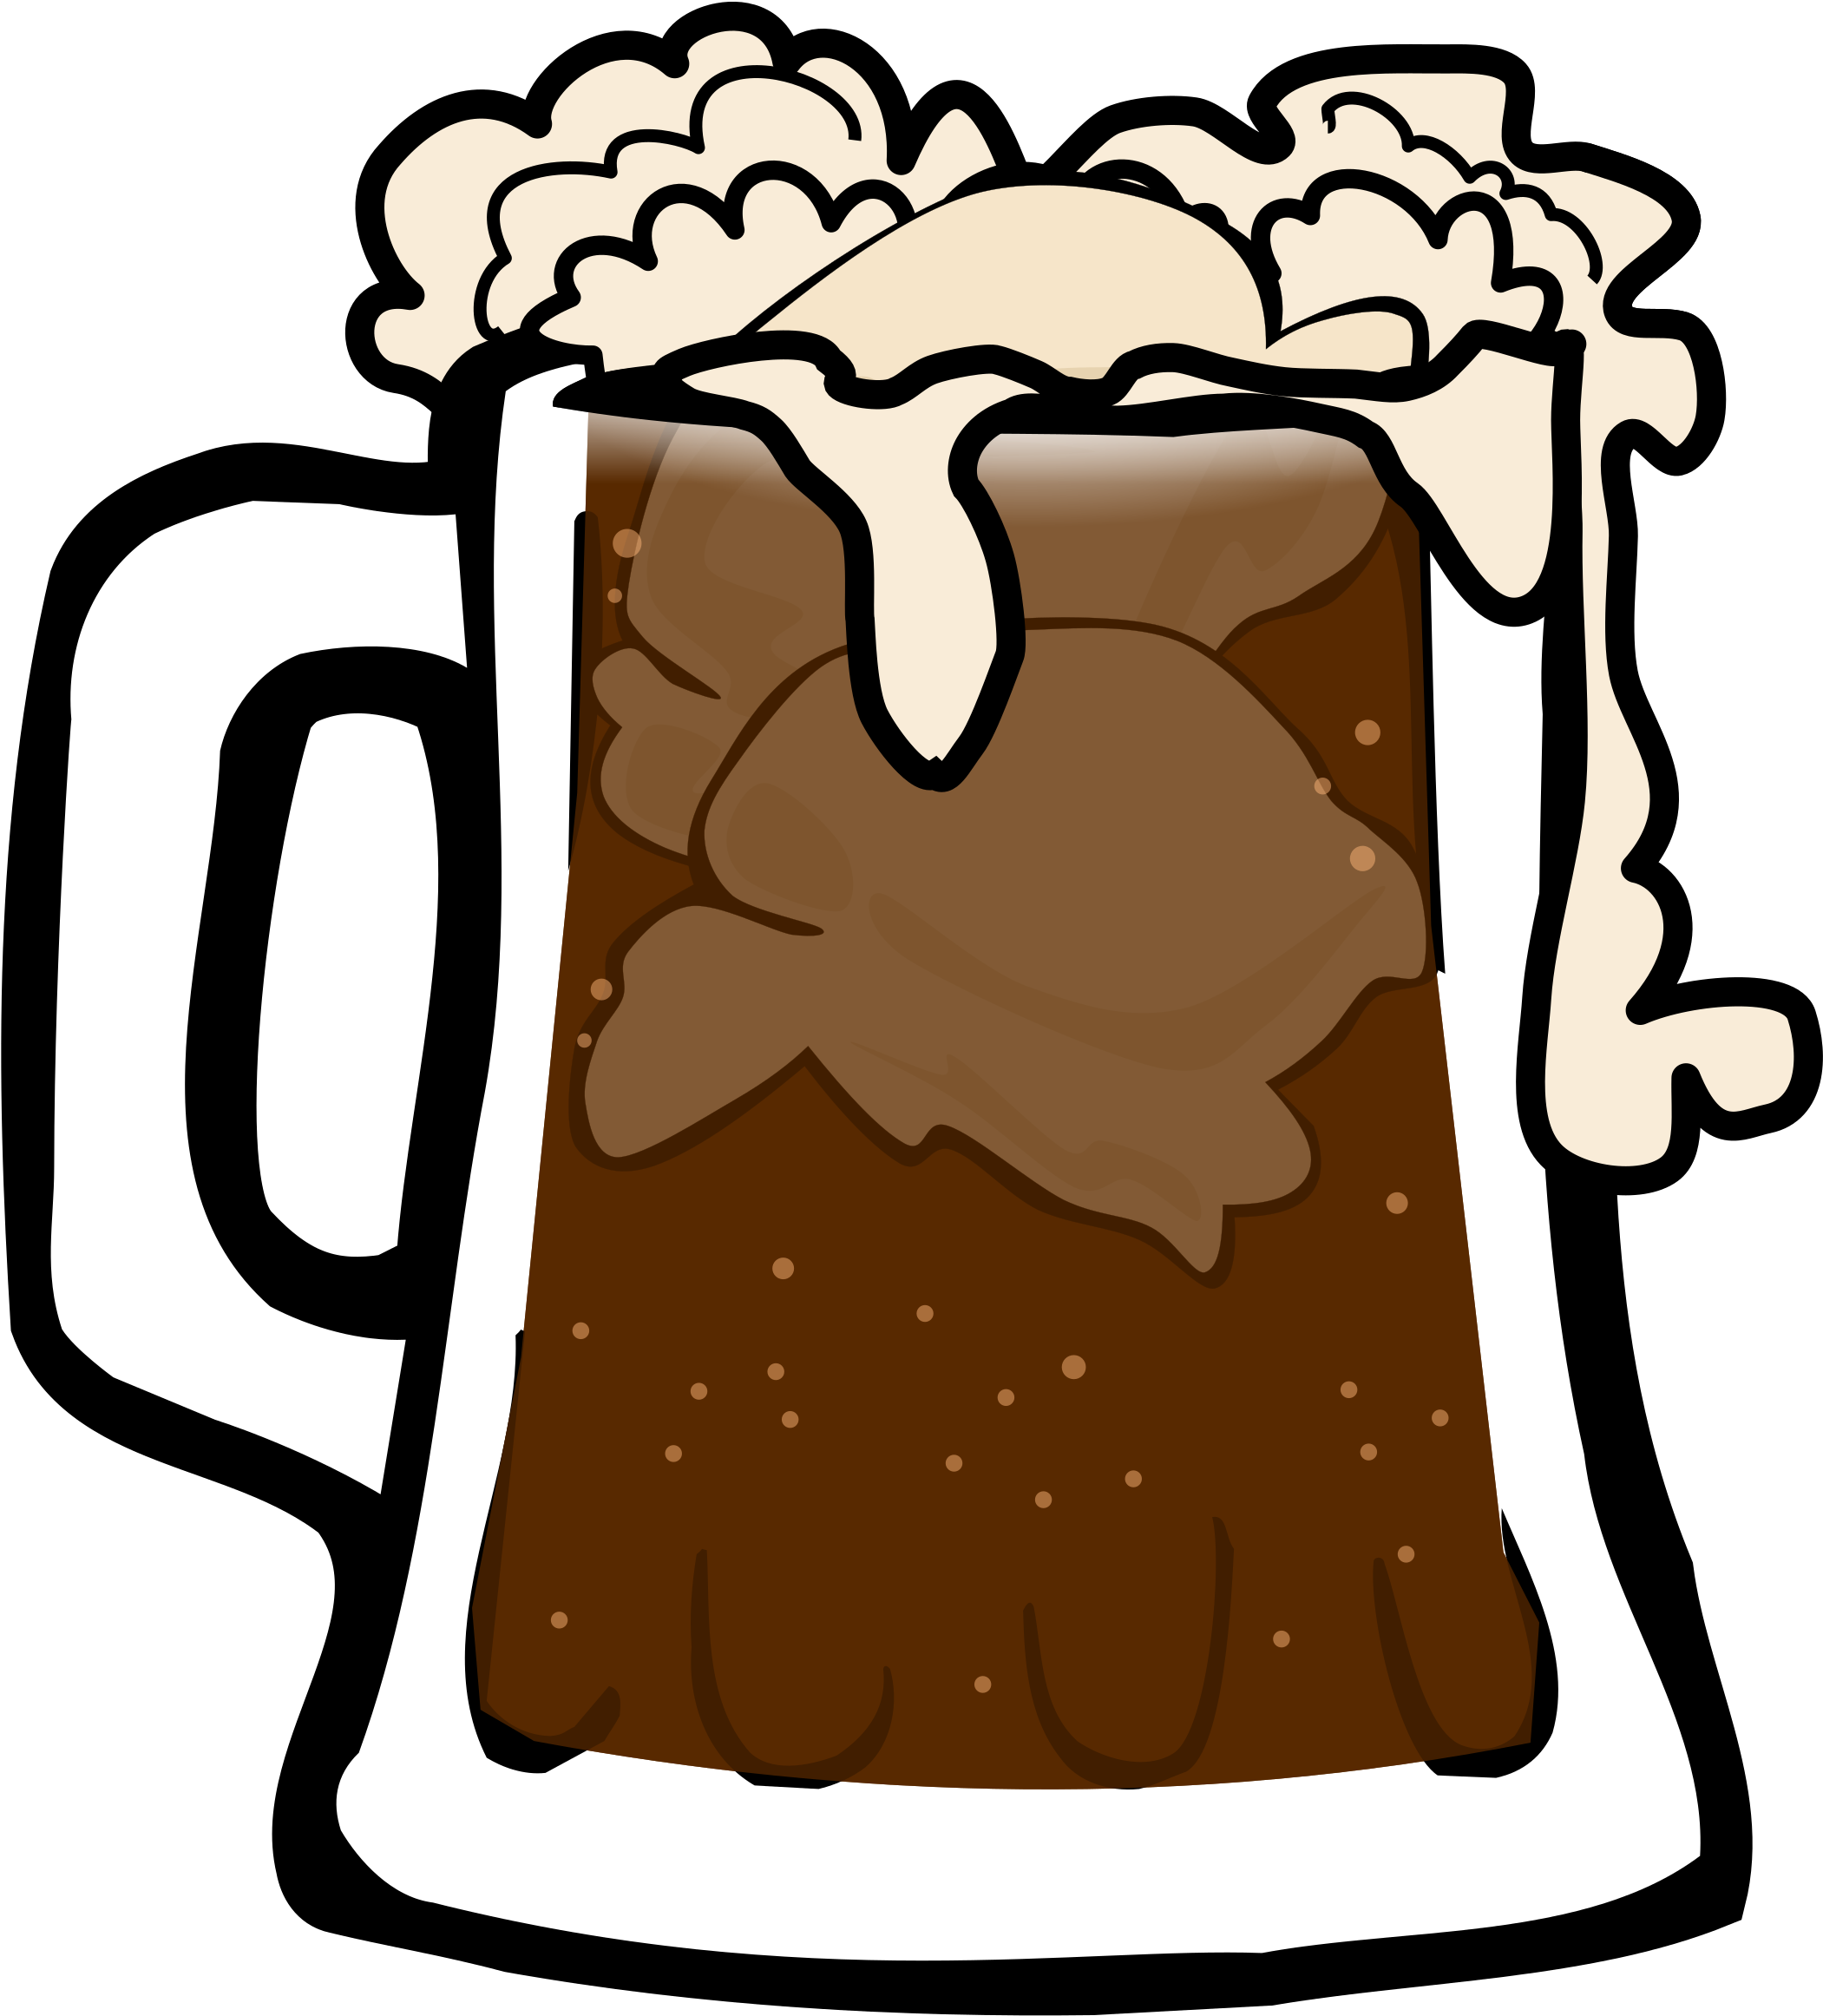 Root Beer Float - Root Beer Float Clipart No Background (2397x2400)